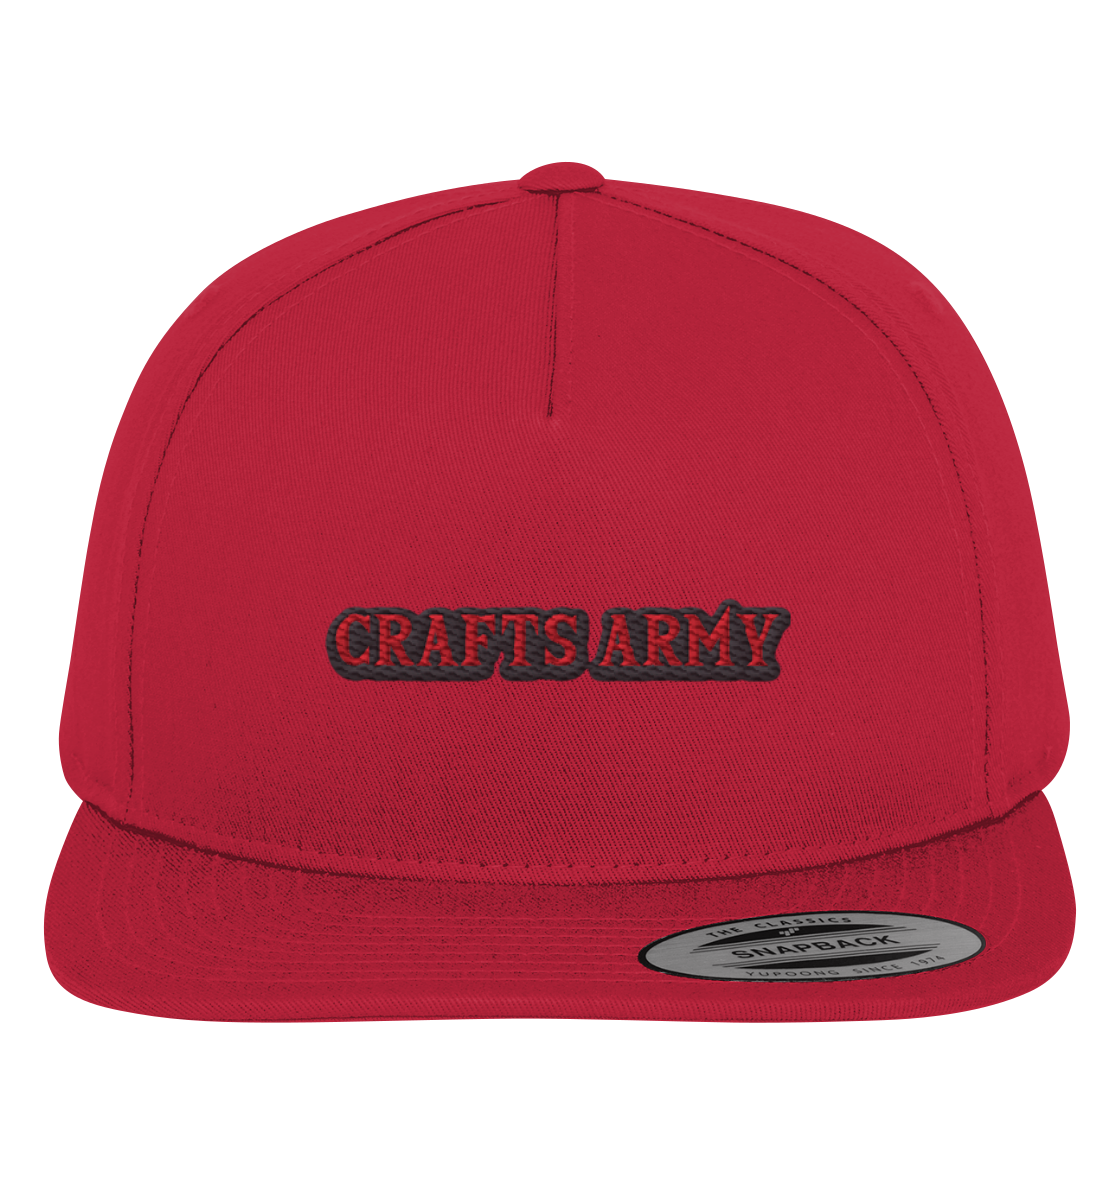 Crafts Army Cap (Stick)